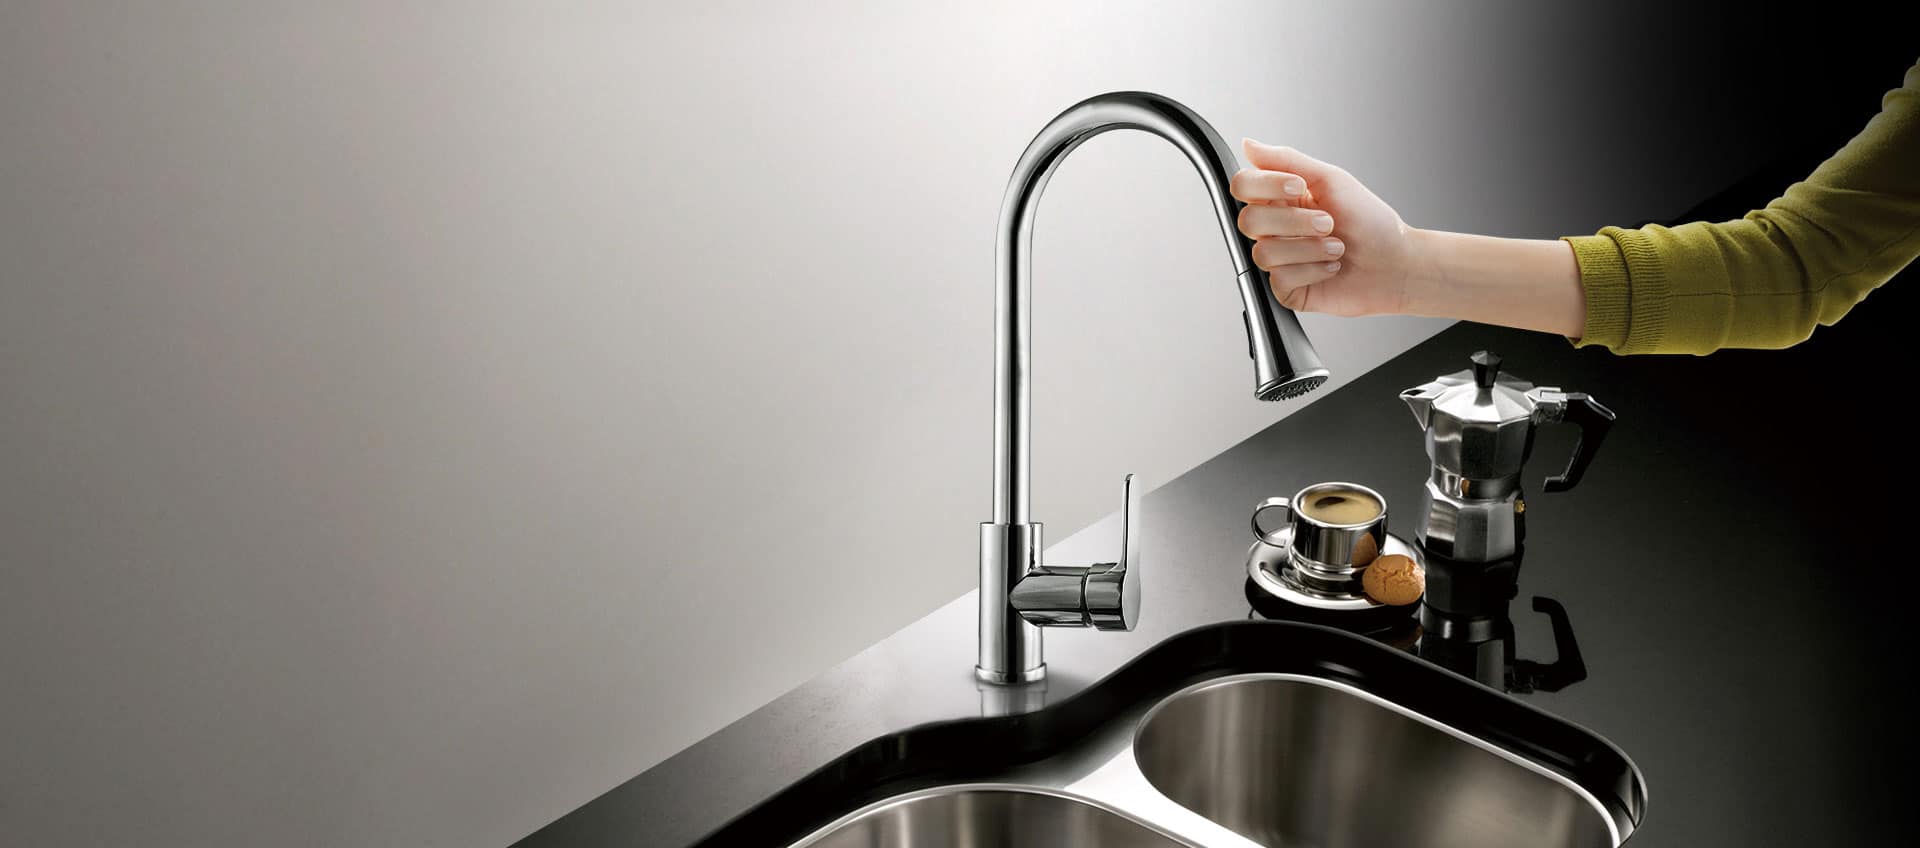 touch sensor kitchen sink faucet